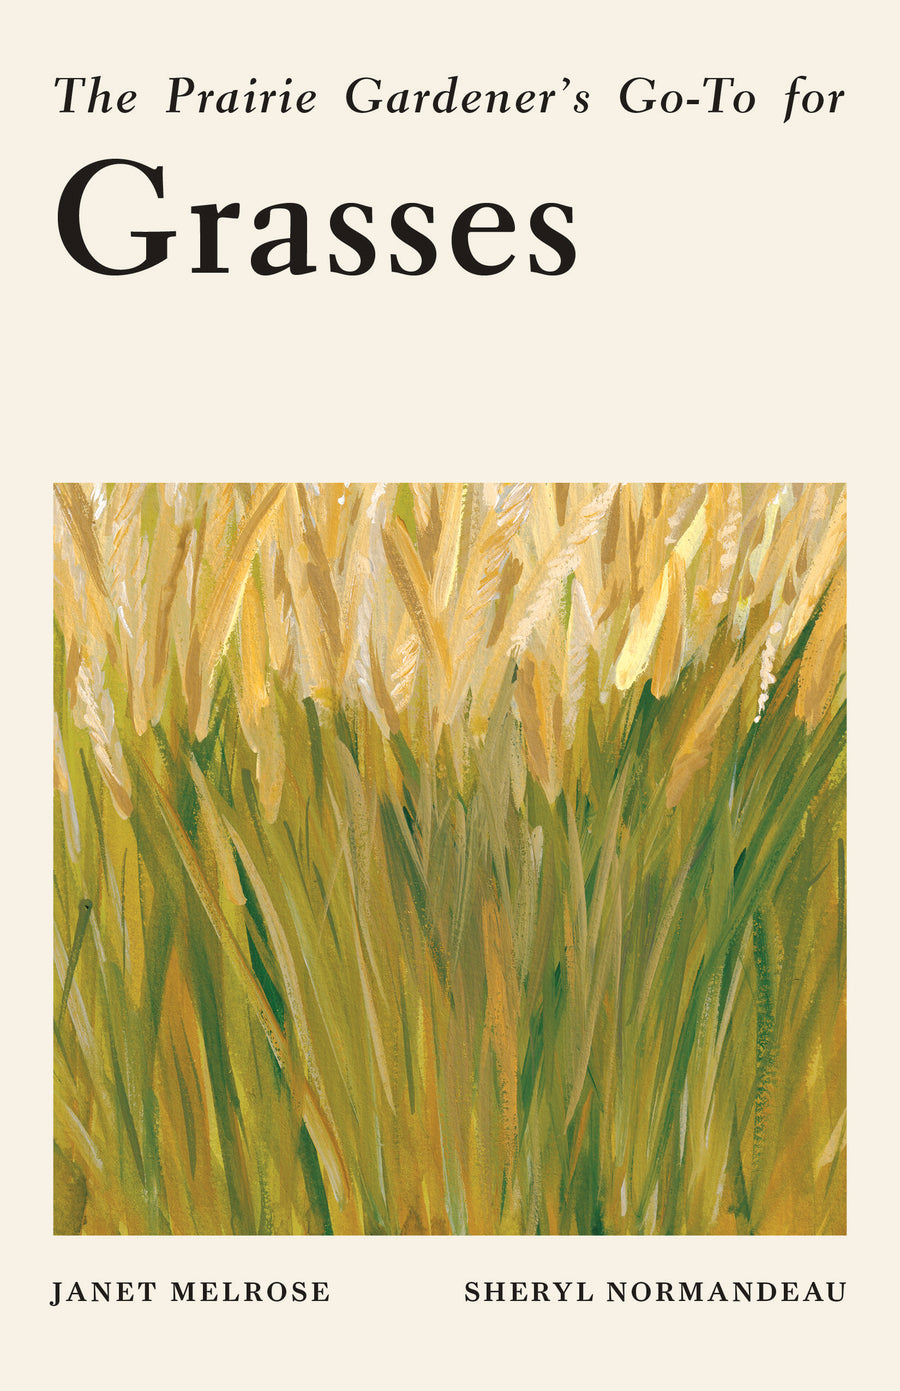 The Prairie Gardener’s Go-To for Grasses